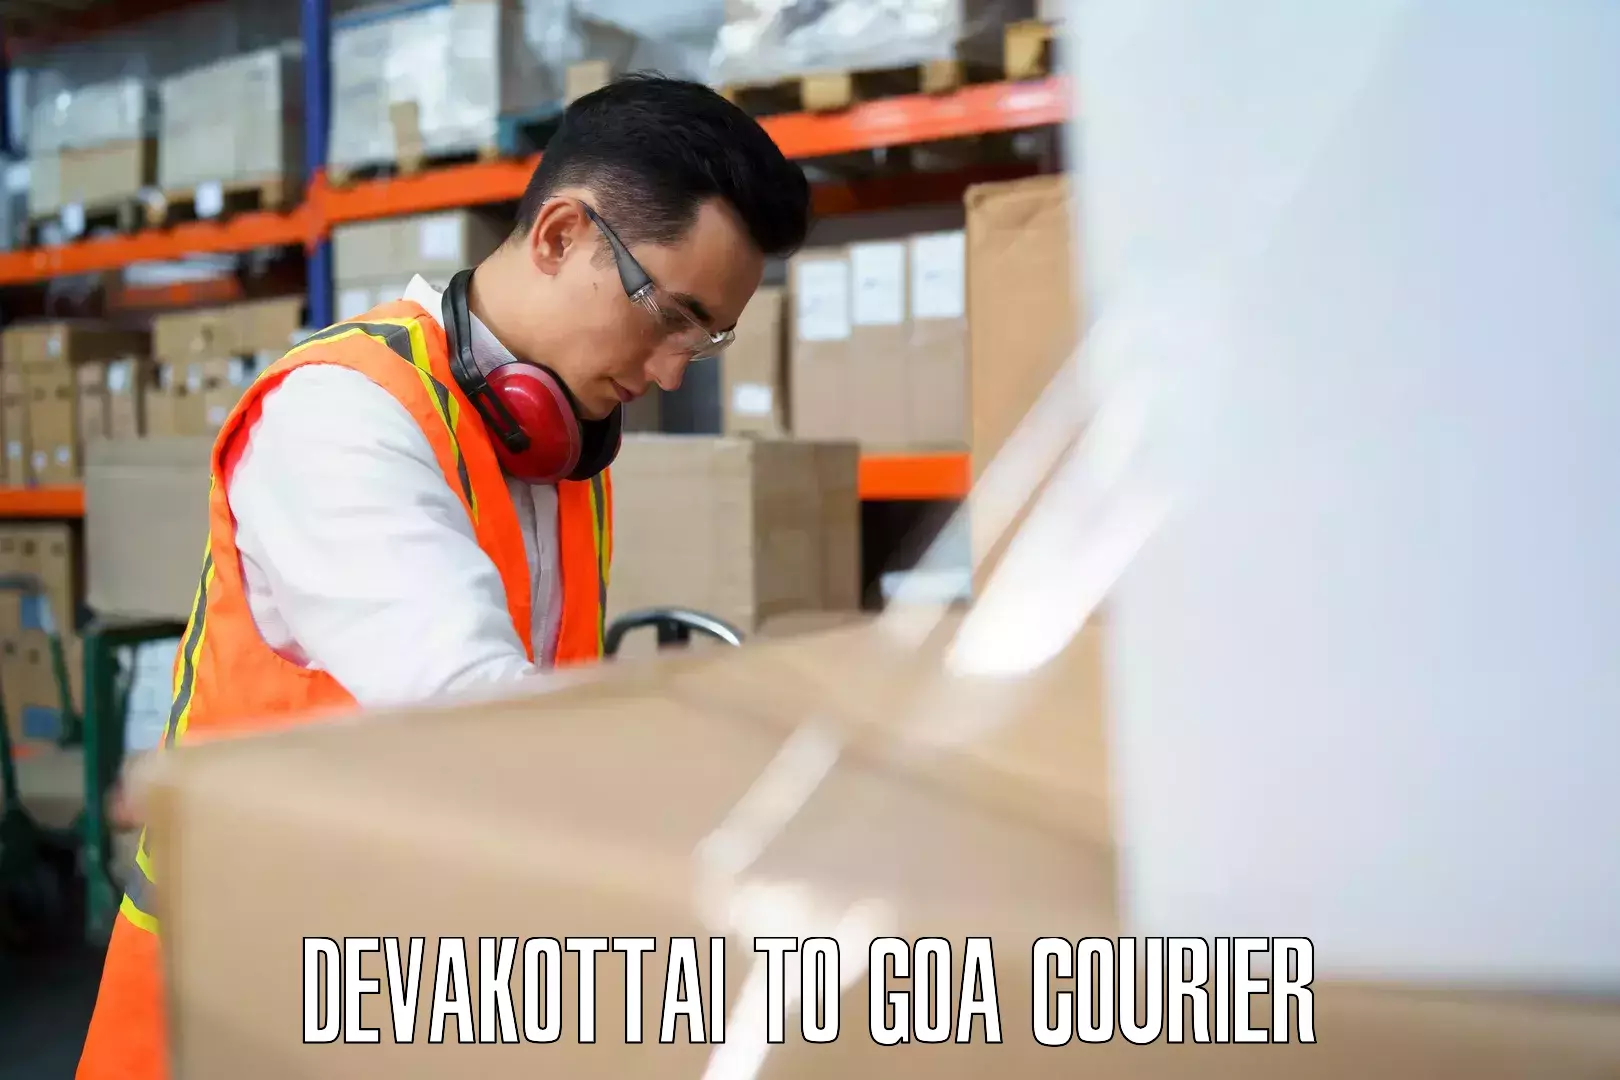 Luggage delivery optimization Devakottai to Goa